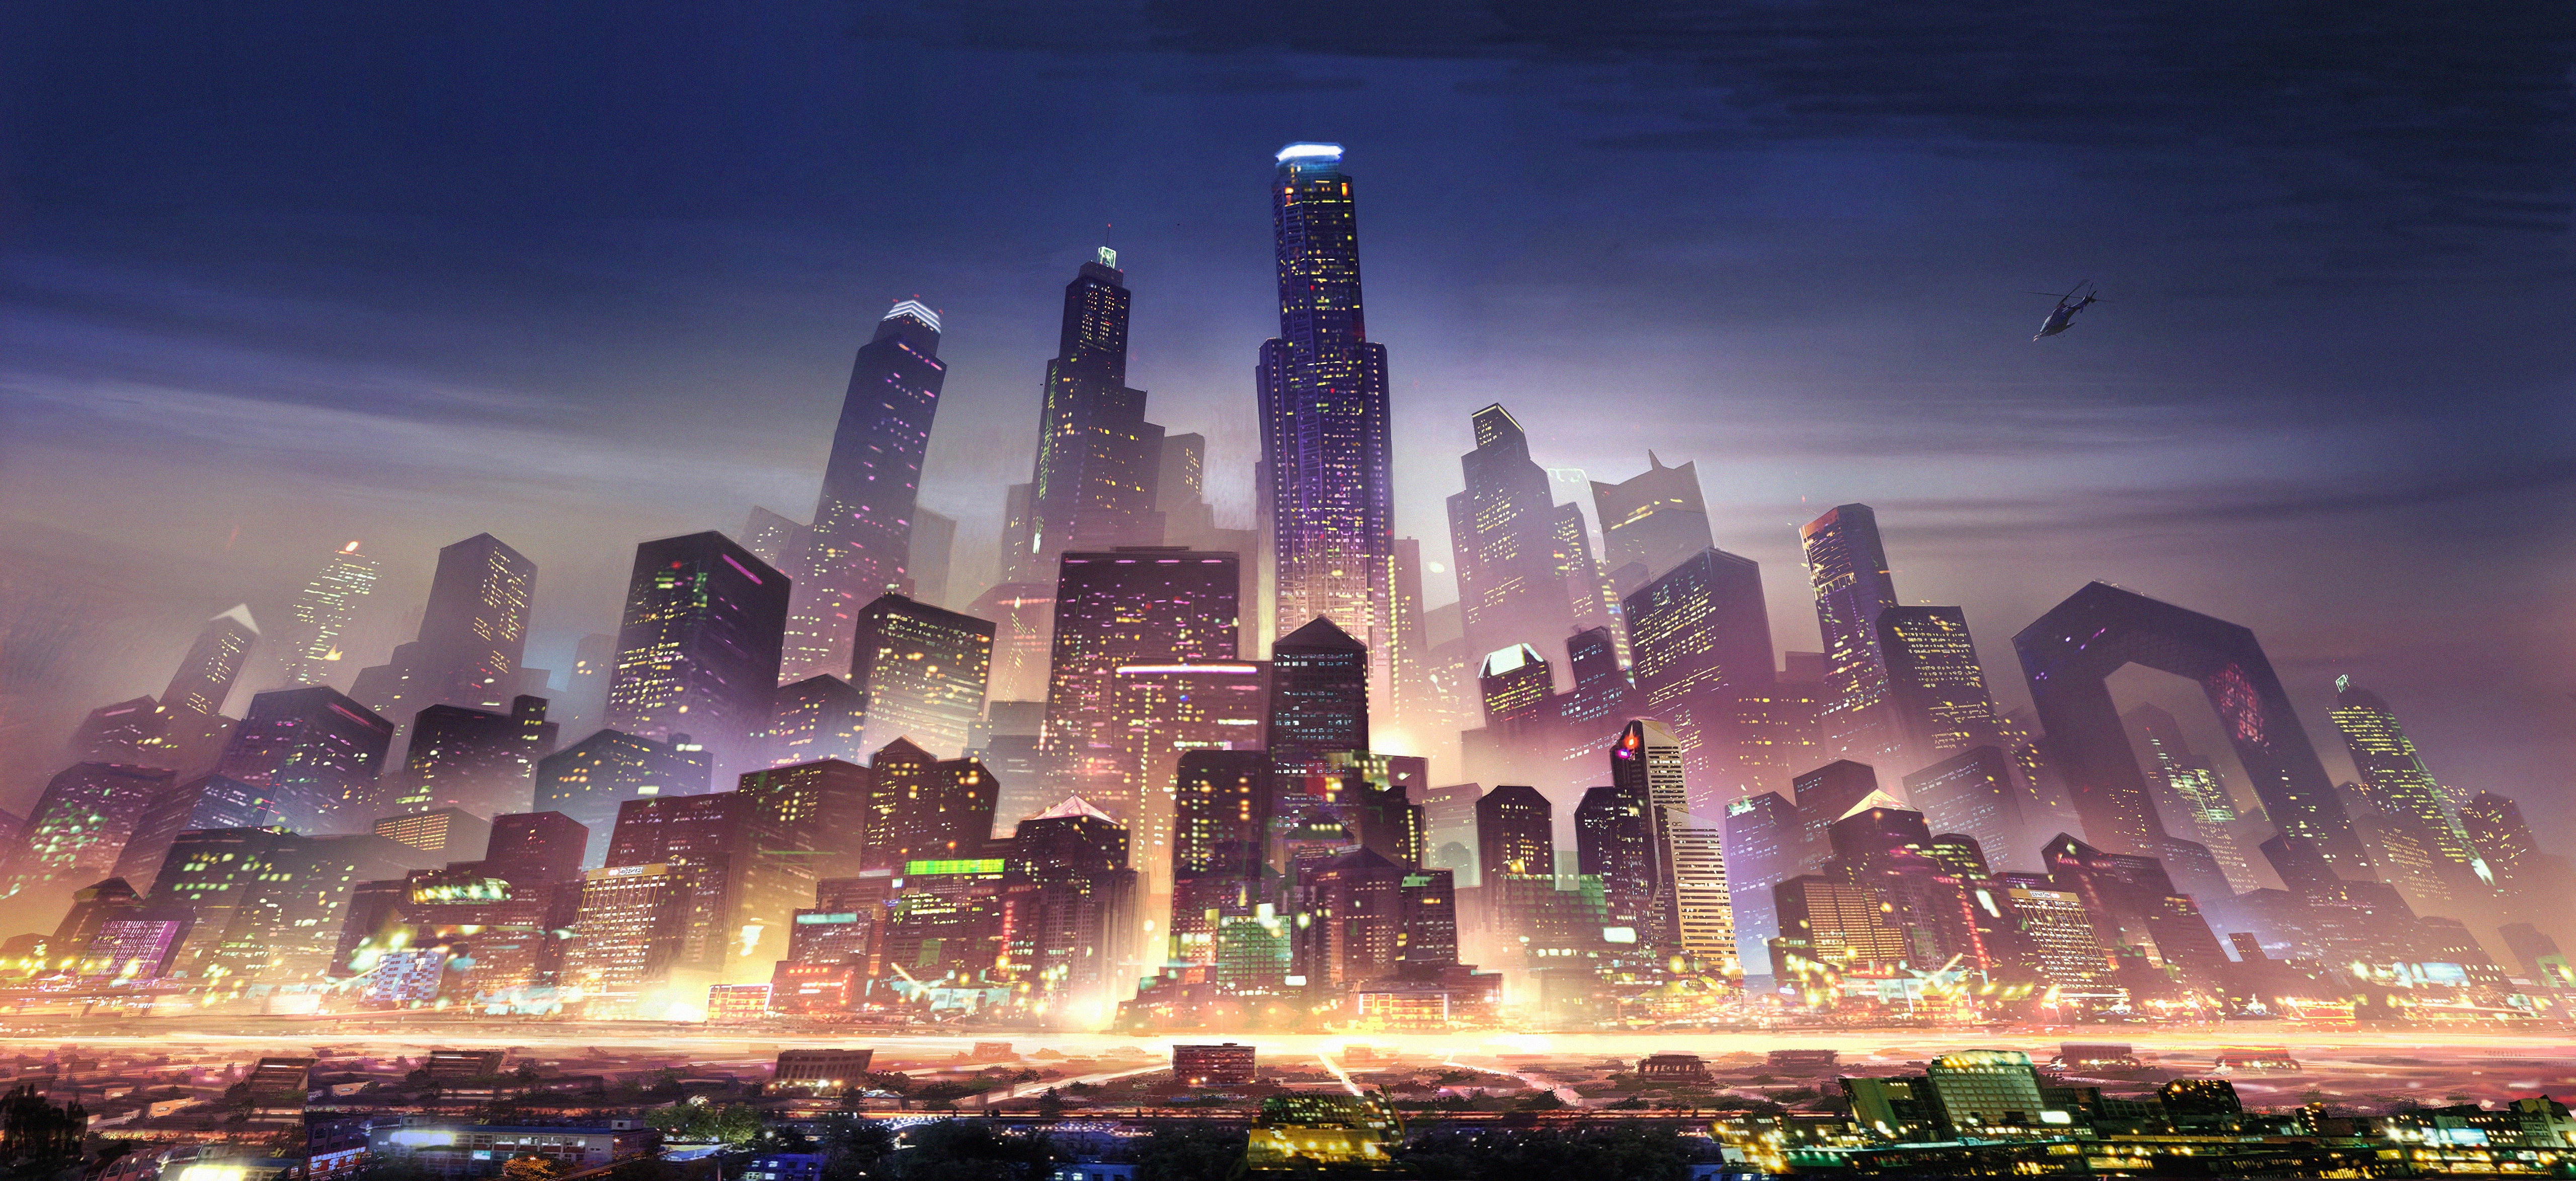 Download mobile wallpaper City, Skyscraper, Building, Cityscape, Sci Fi, Futuristic for free.